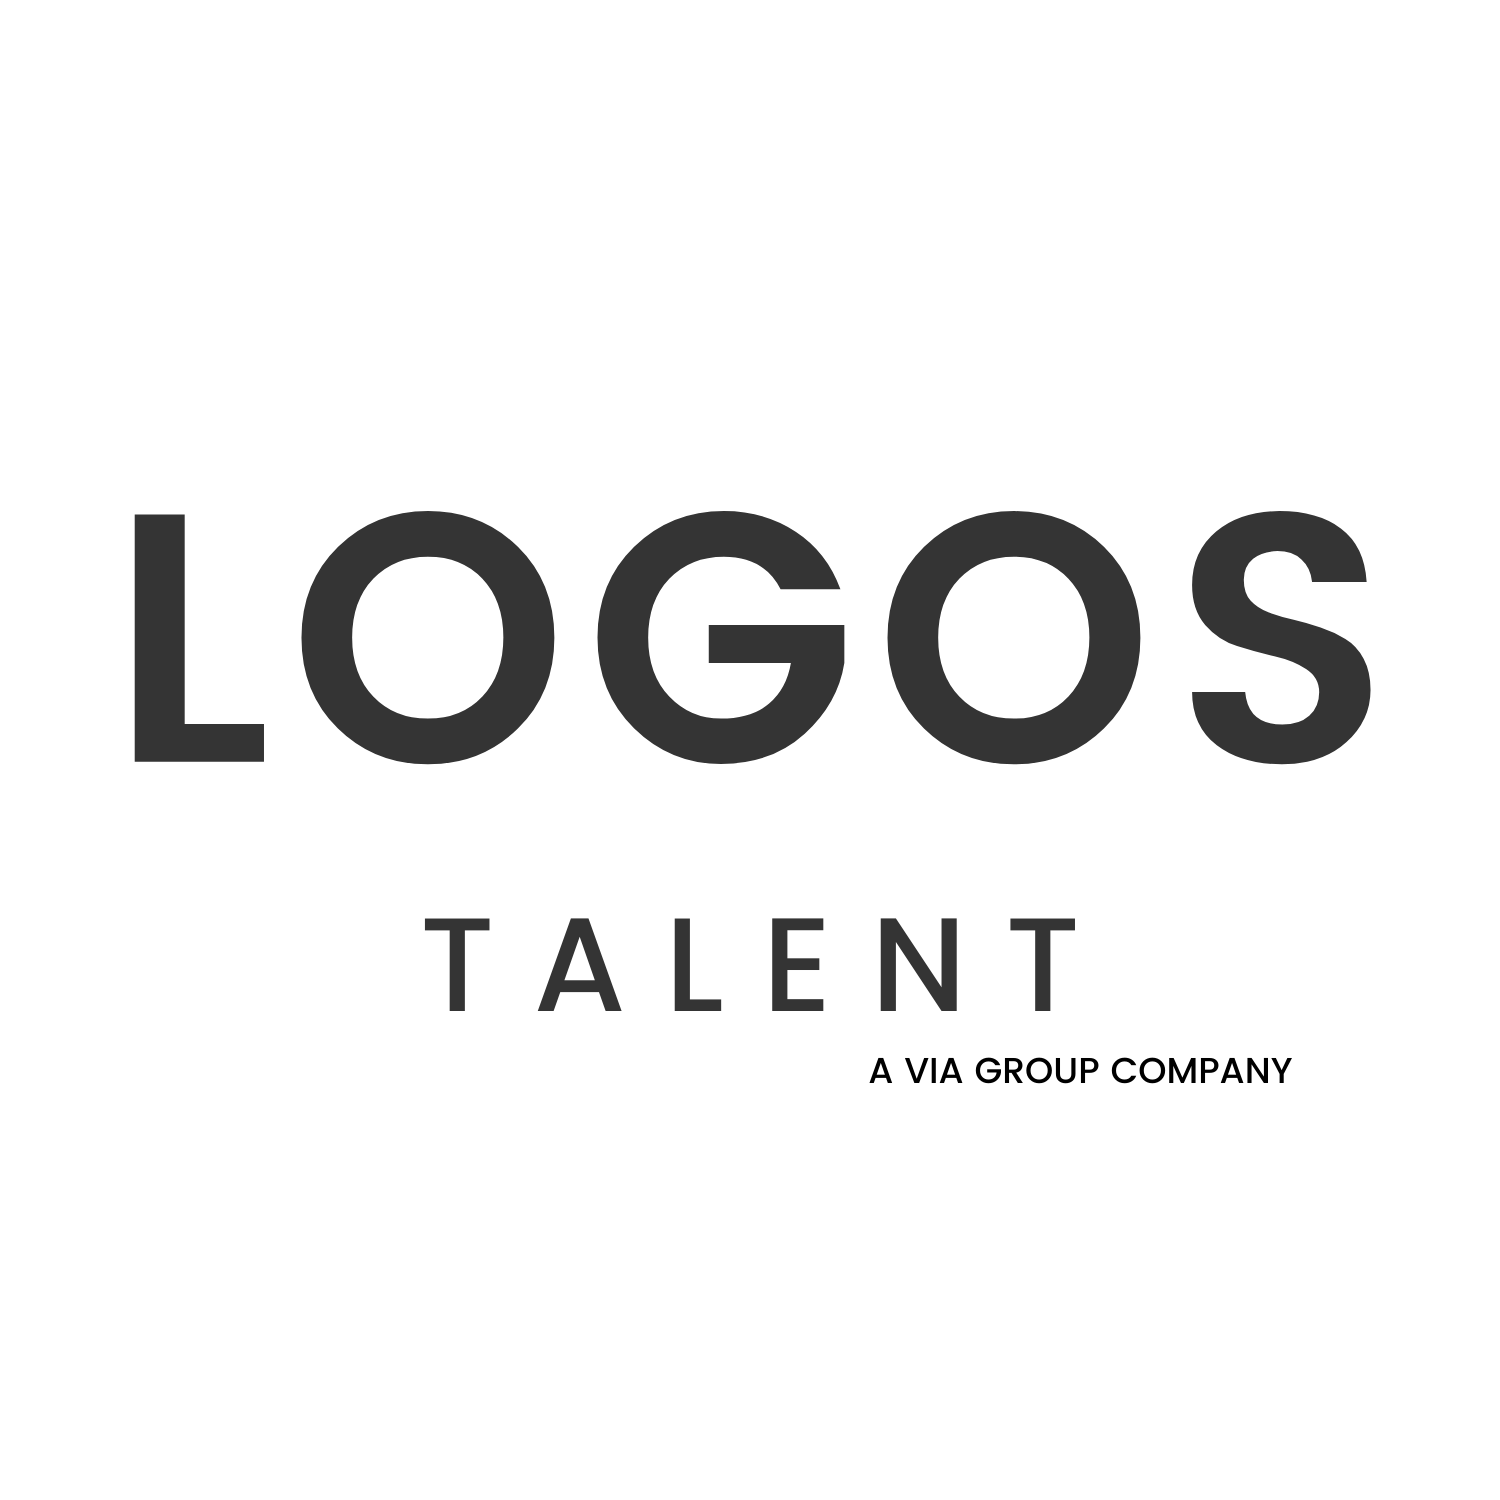 Logos Talent